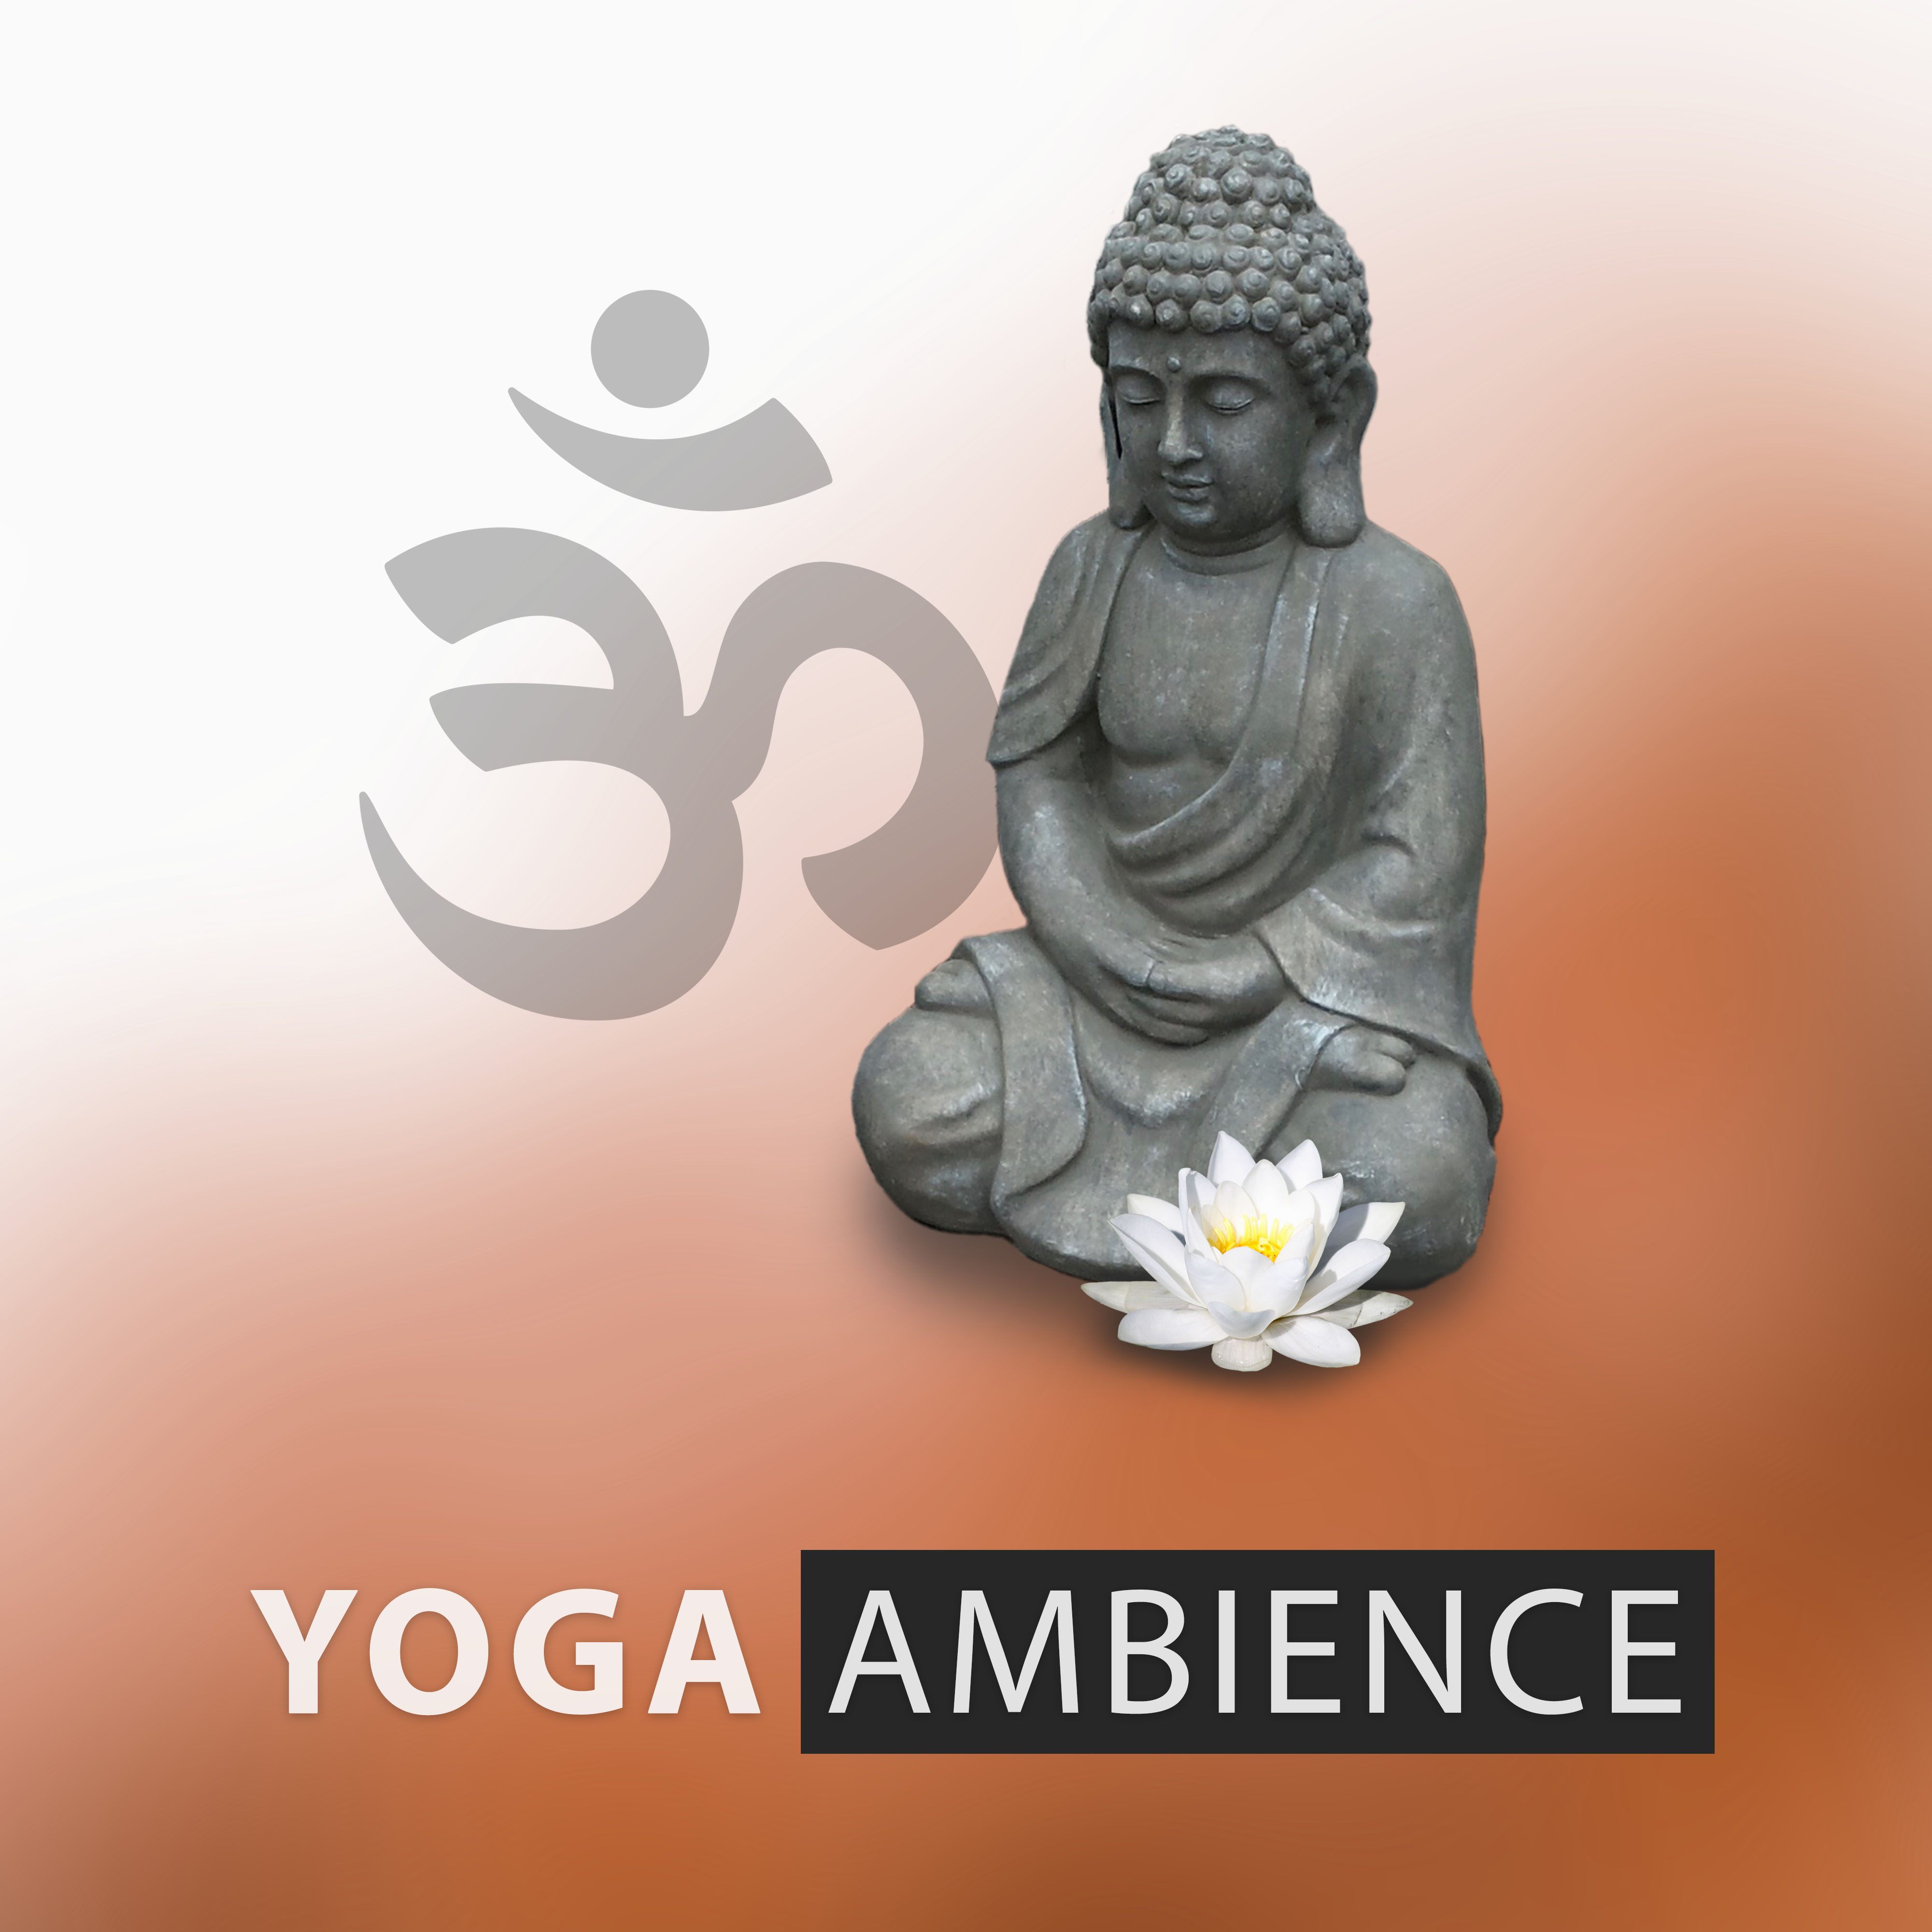 Yoga Ambience – Chakra Yoga, Mantra, Relaxing Energy, Sleep Yoga